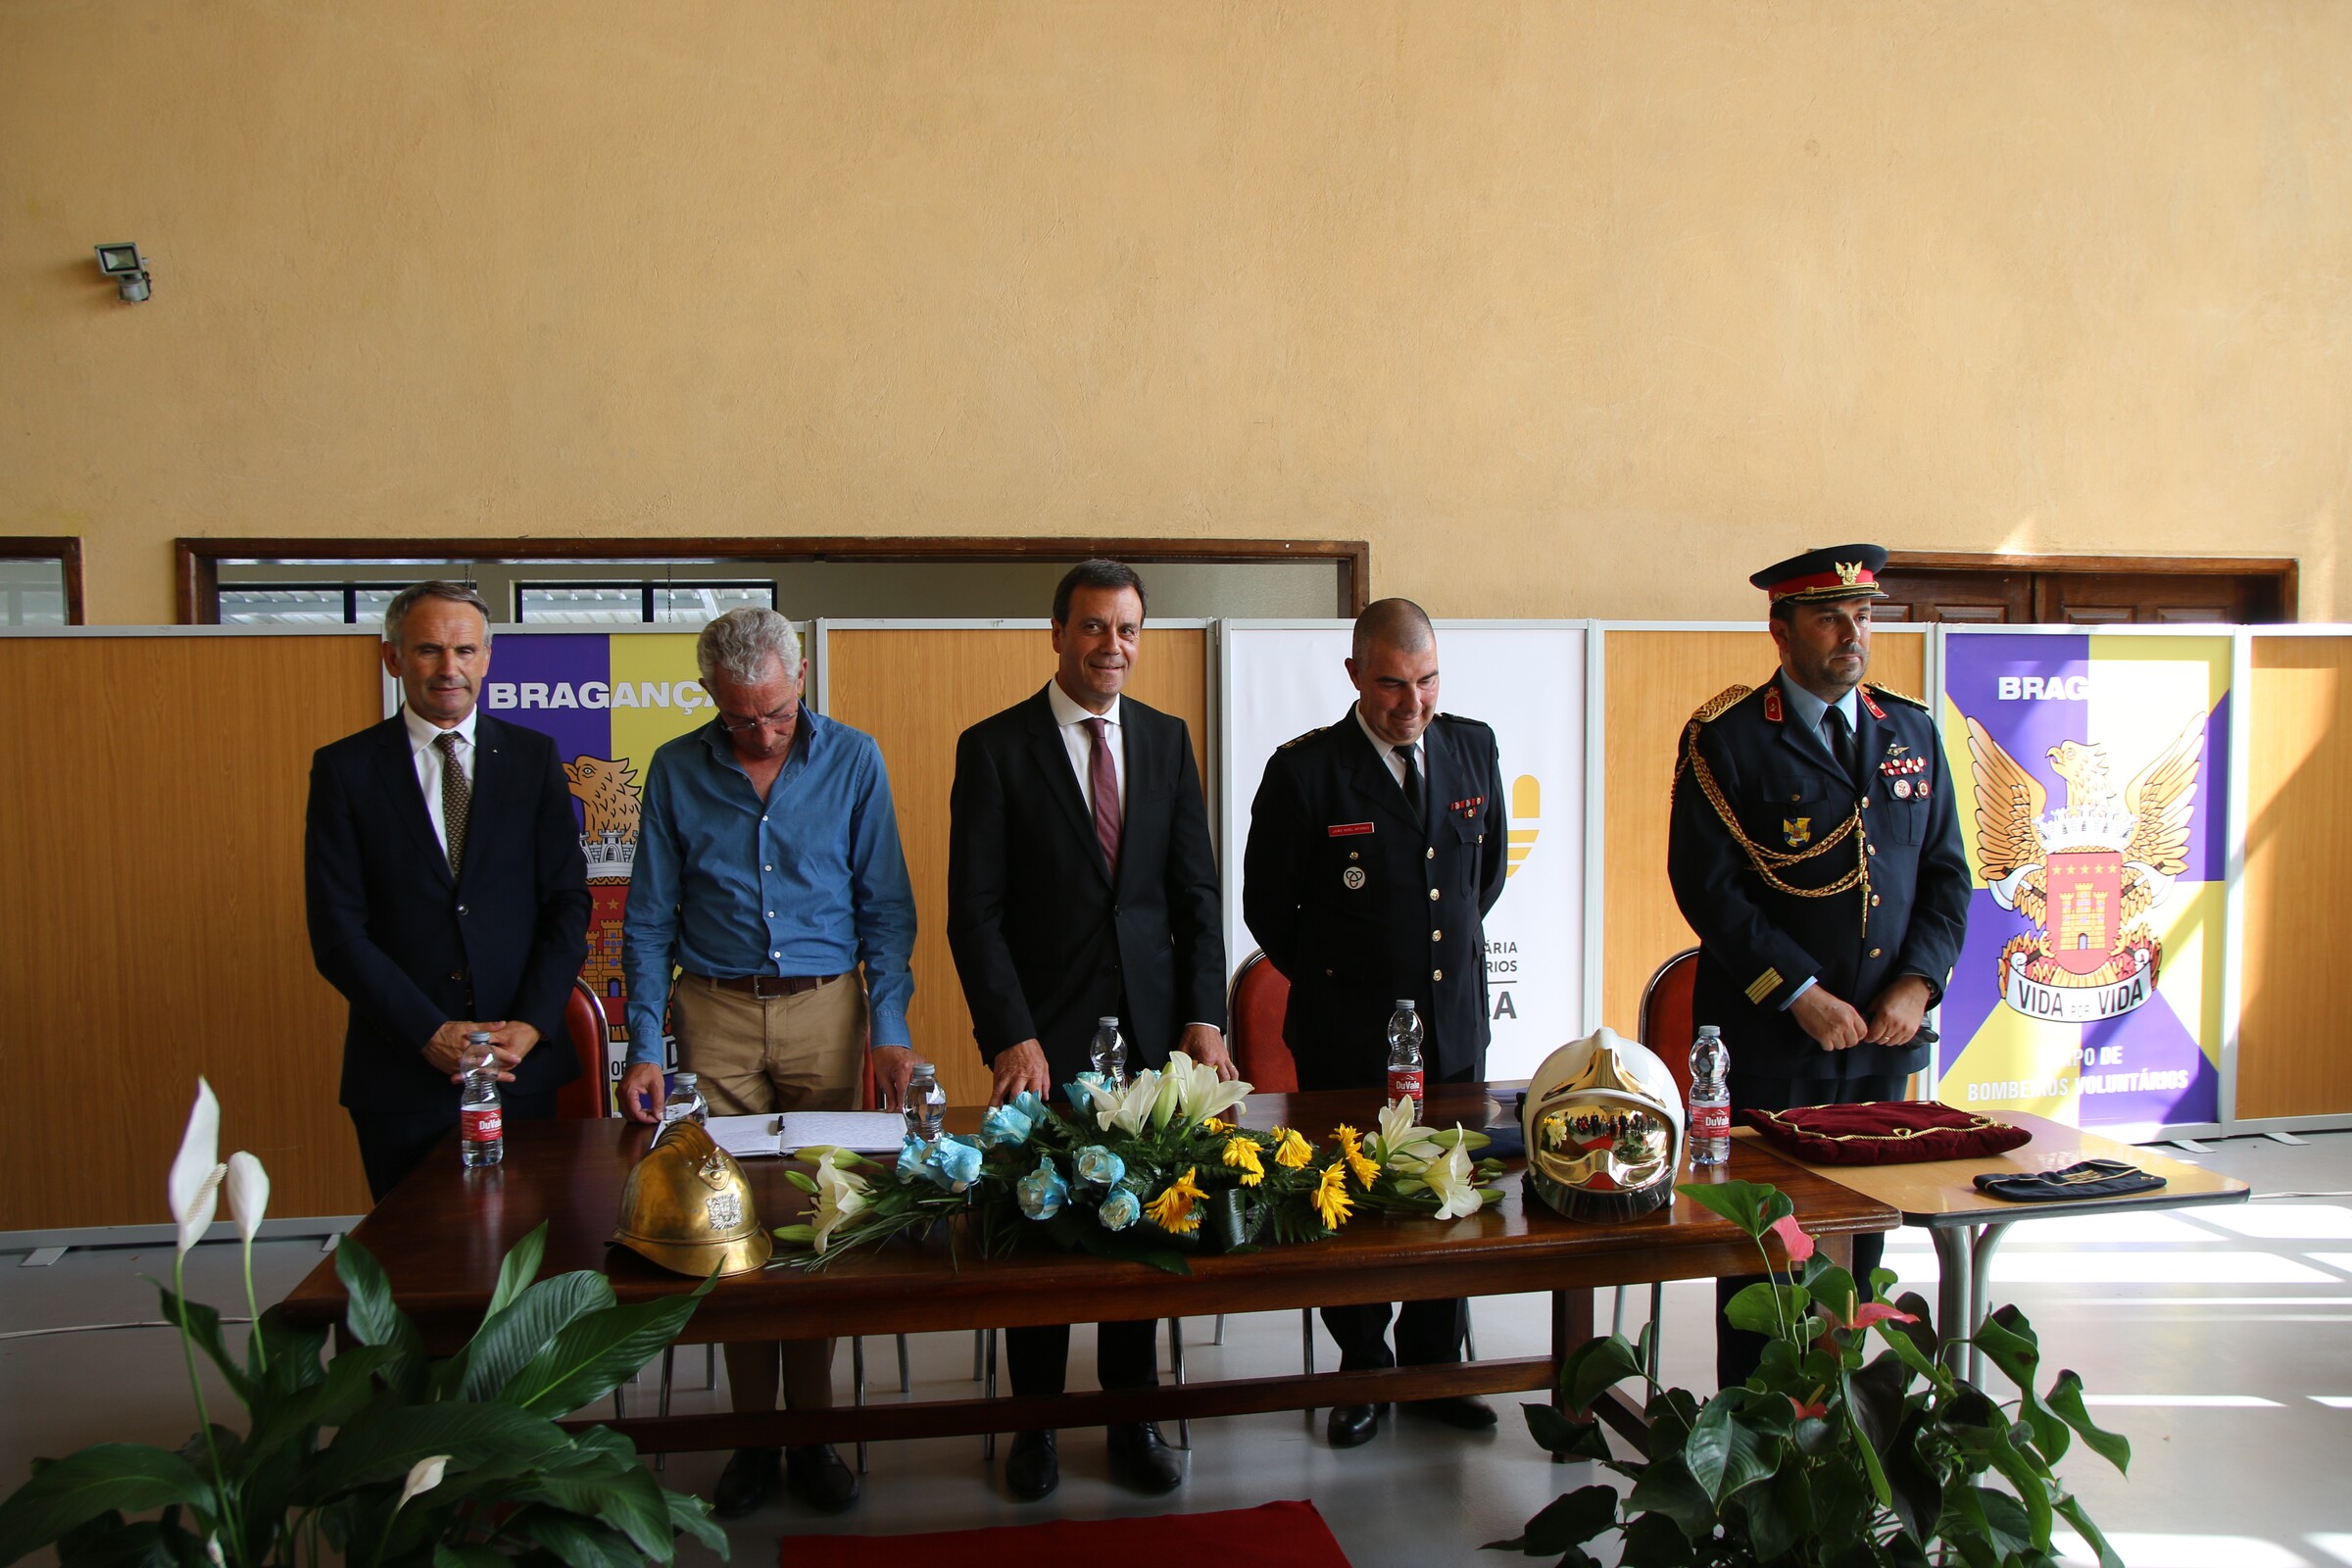 Bombeiros Voluntários de Bragança comemoram 132 anos com novo comandante